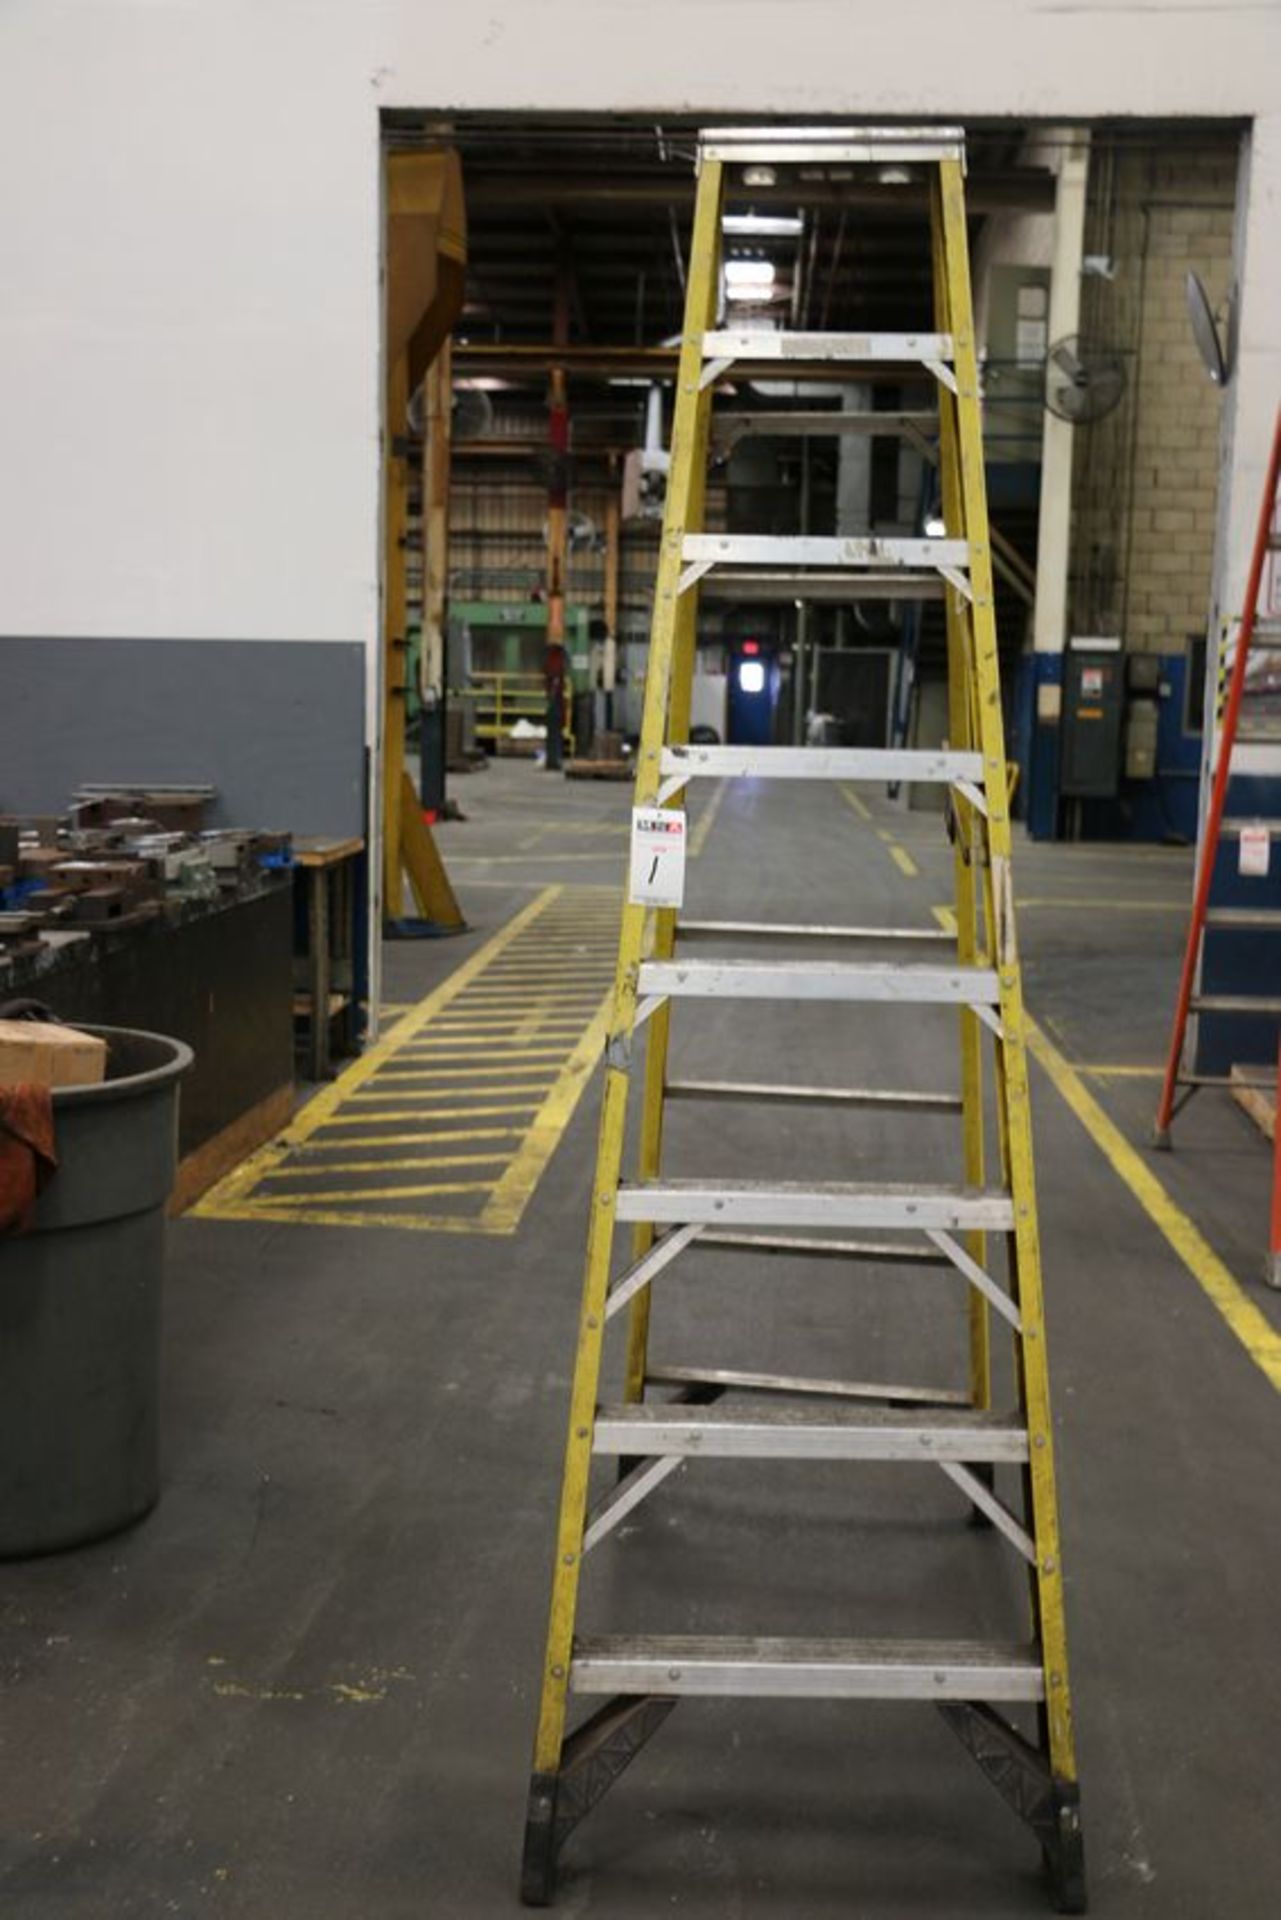 12 ft. Warner ladder